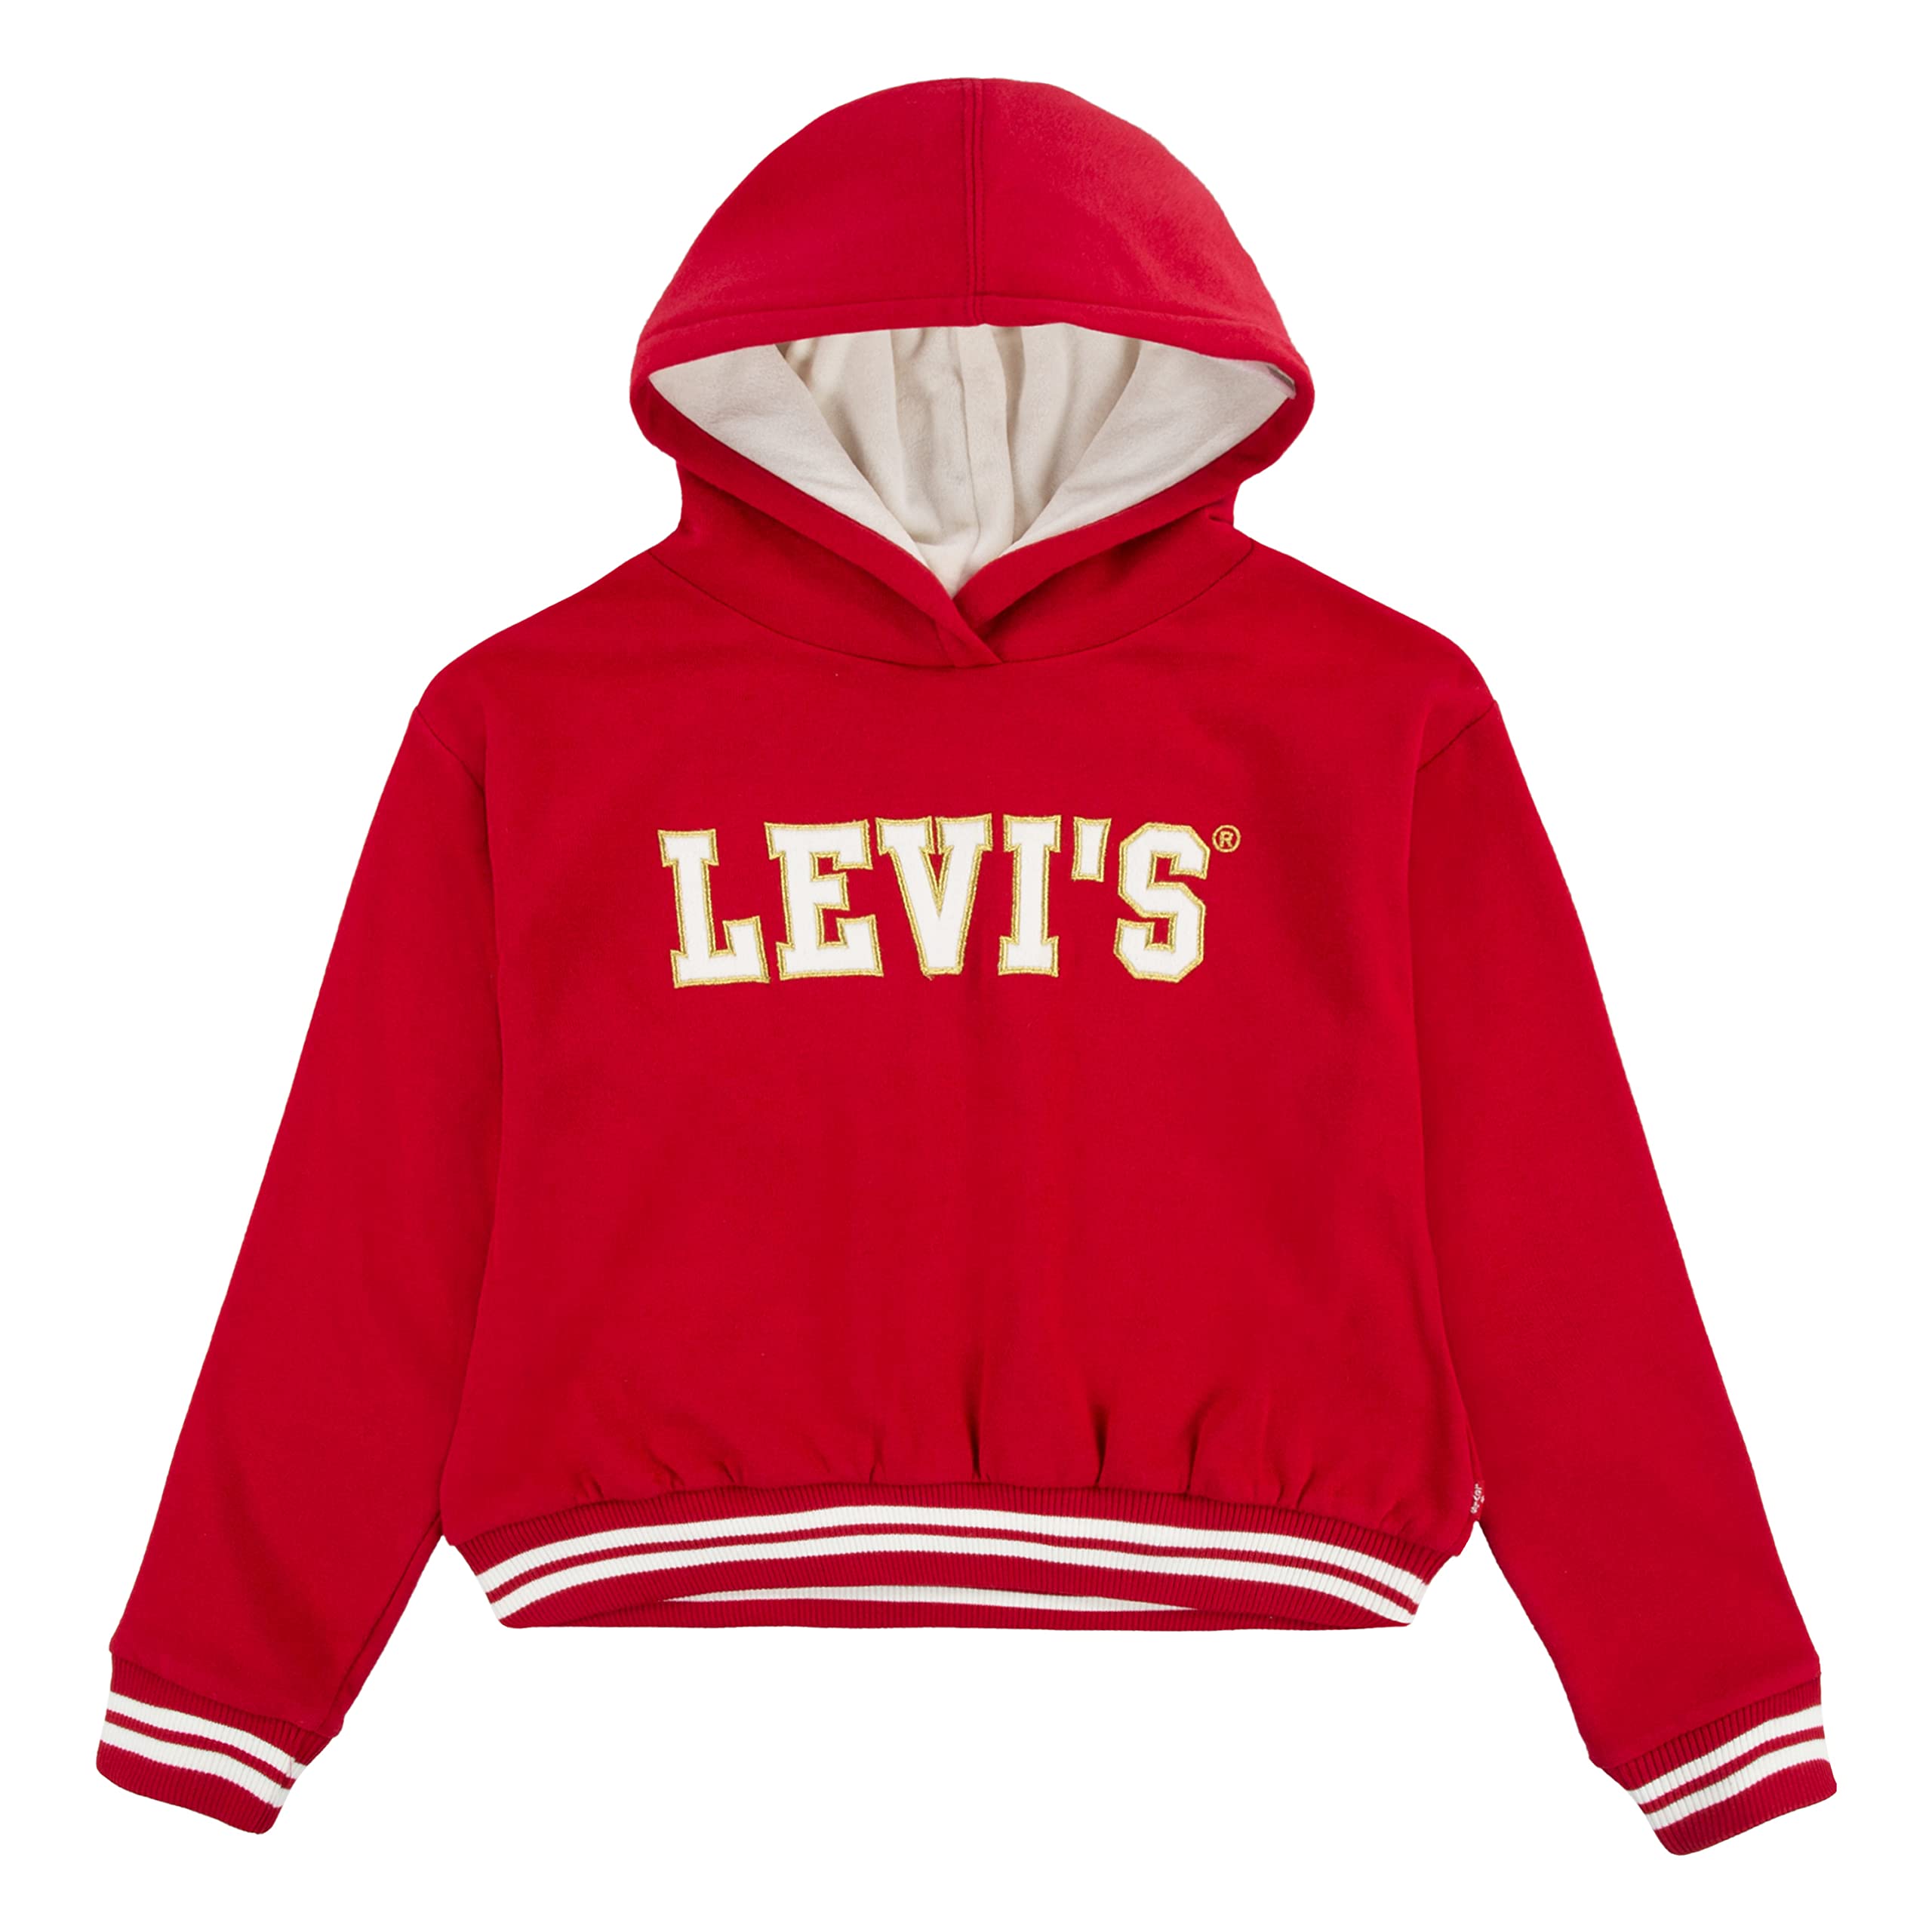 Пуловер с капюшоном с высокой посадкой (для маленьких детей) Levi's®